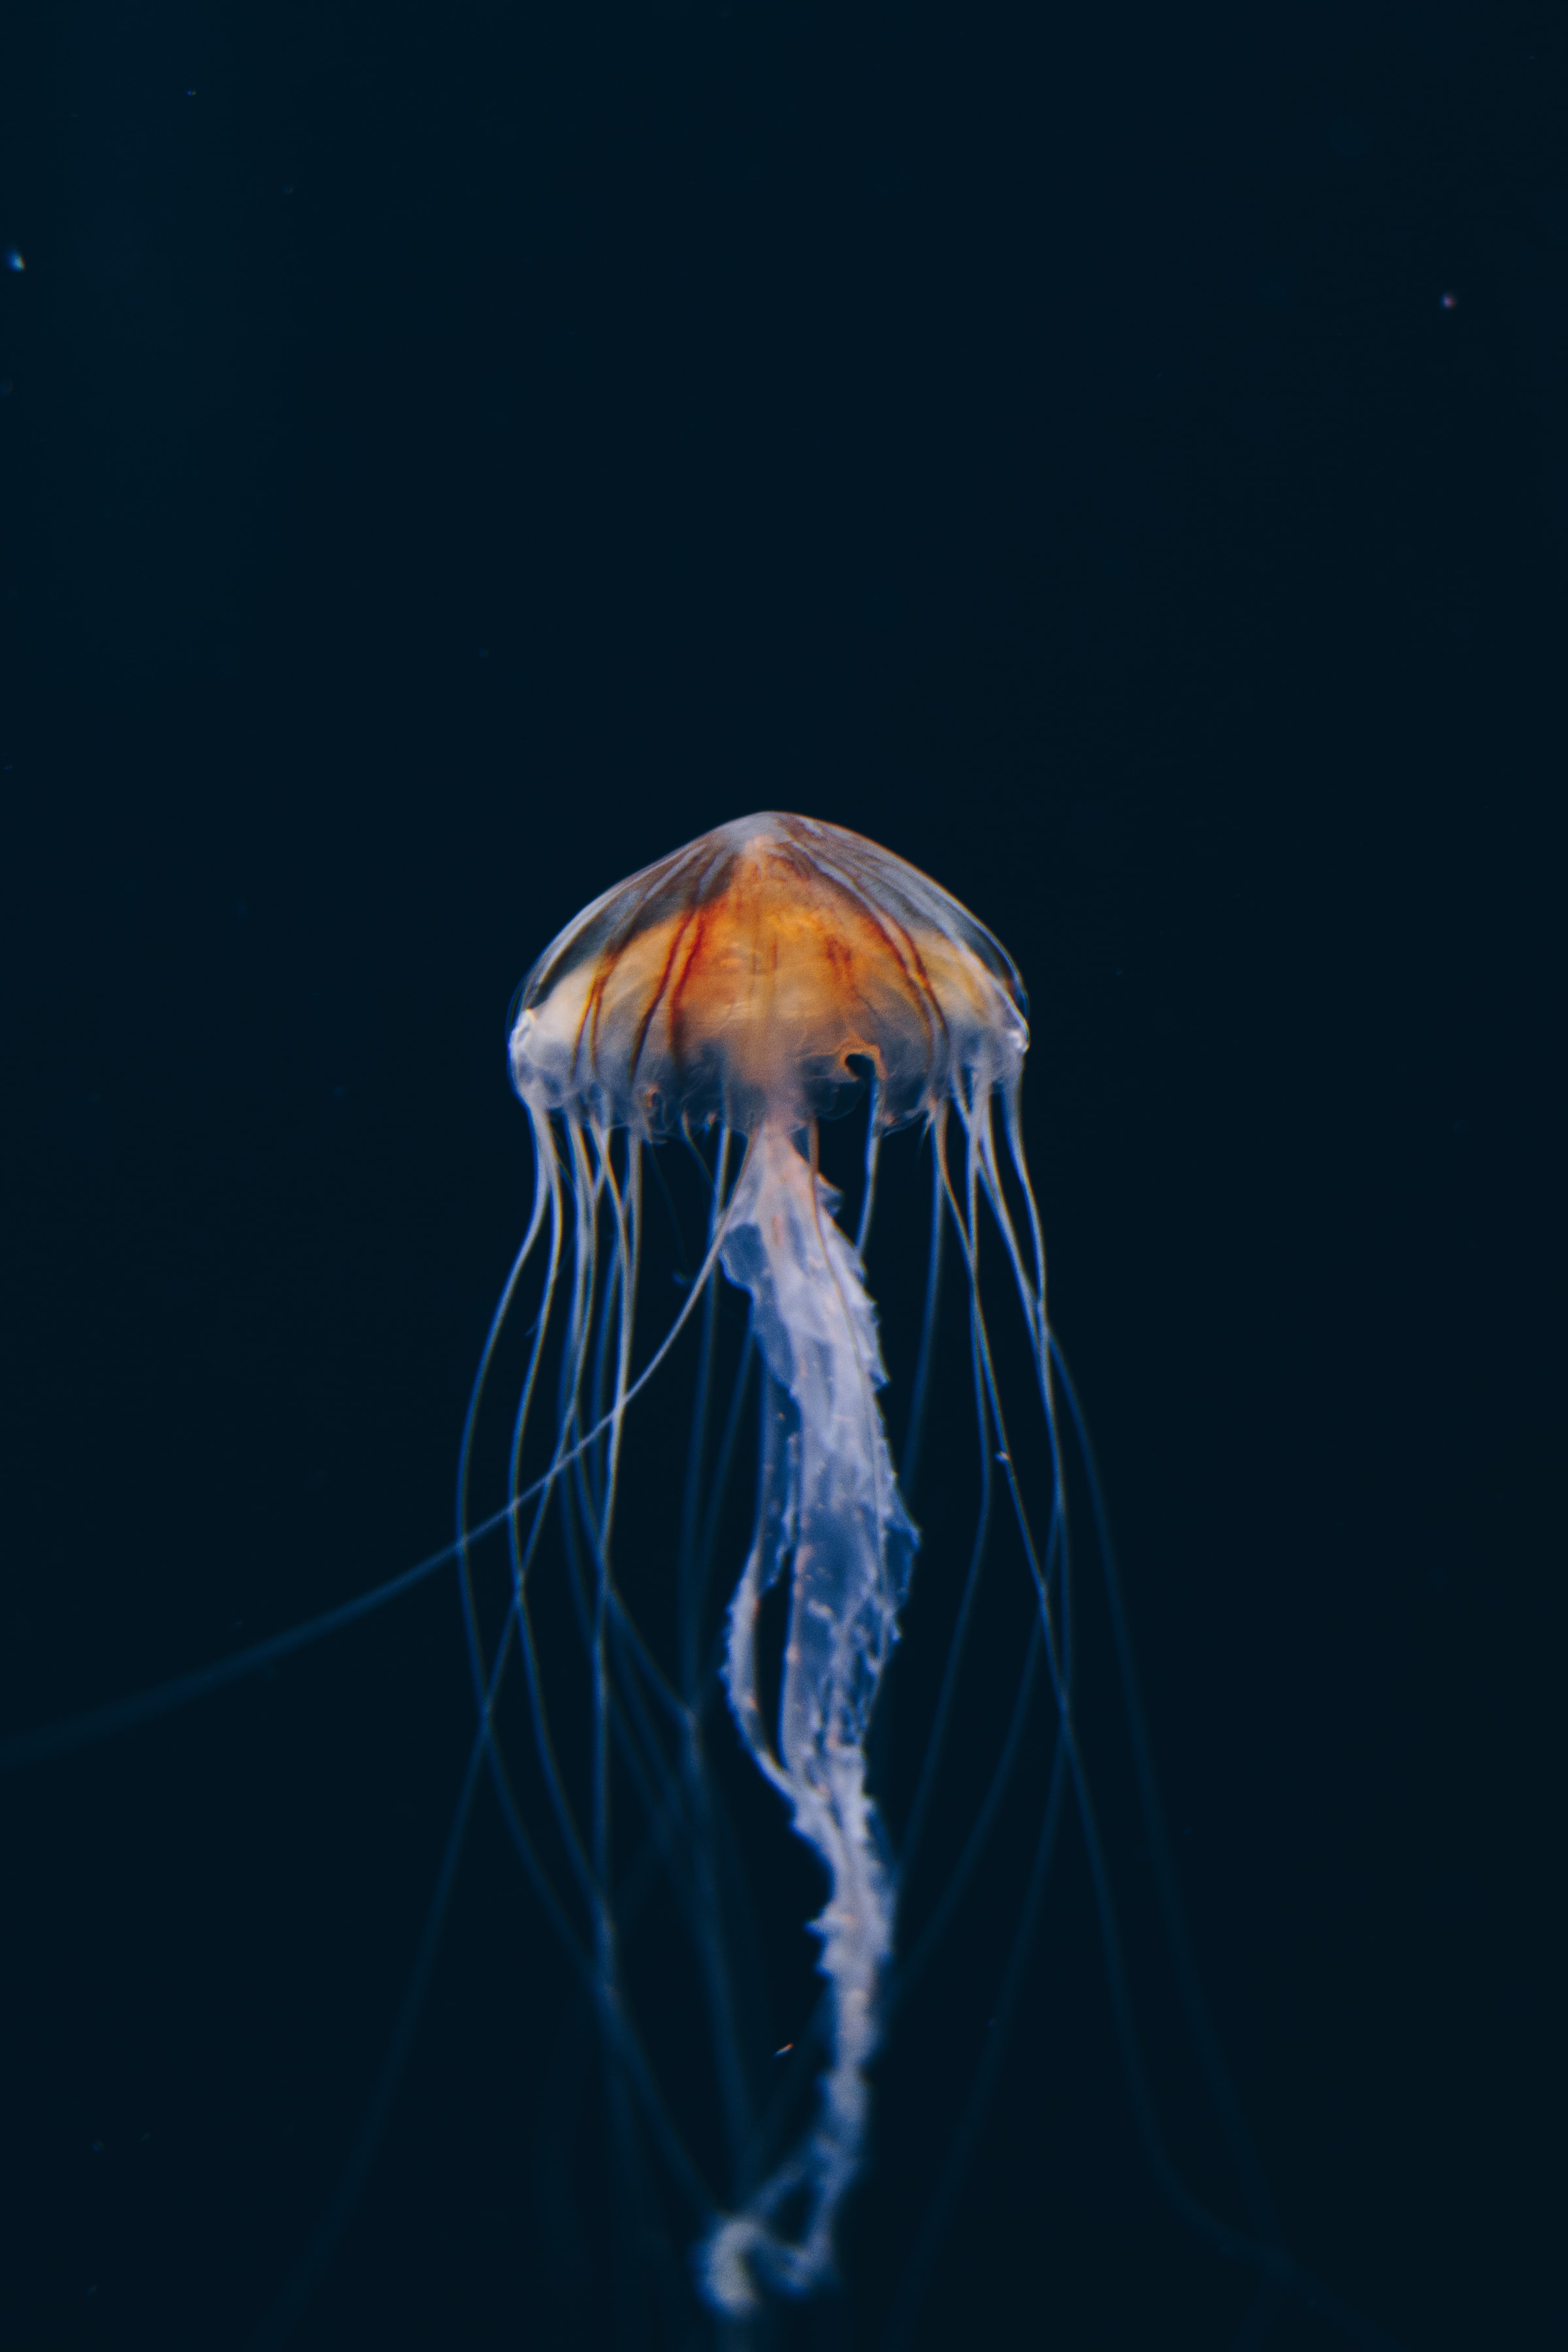 Free HD jellyfish, nature, water, dark, beautiful, underwater world